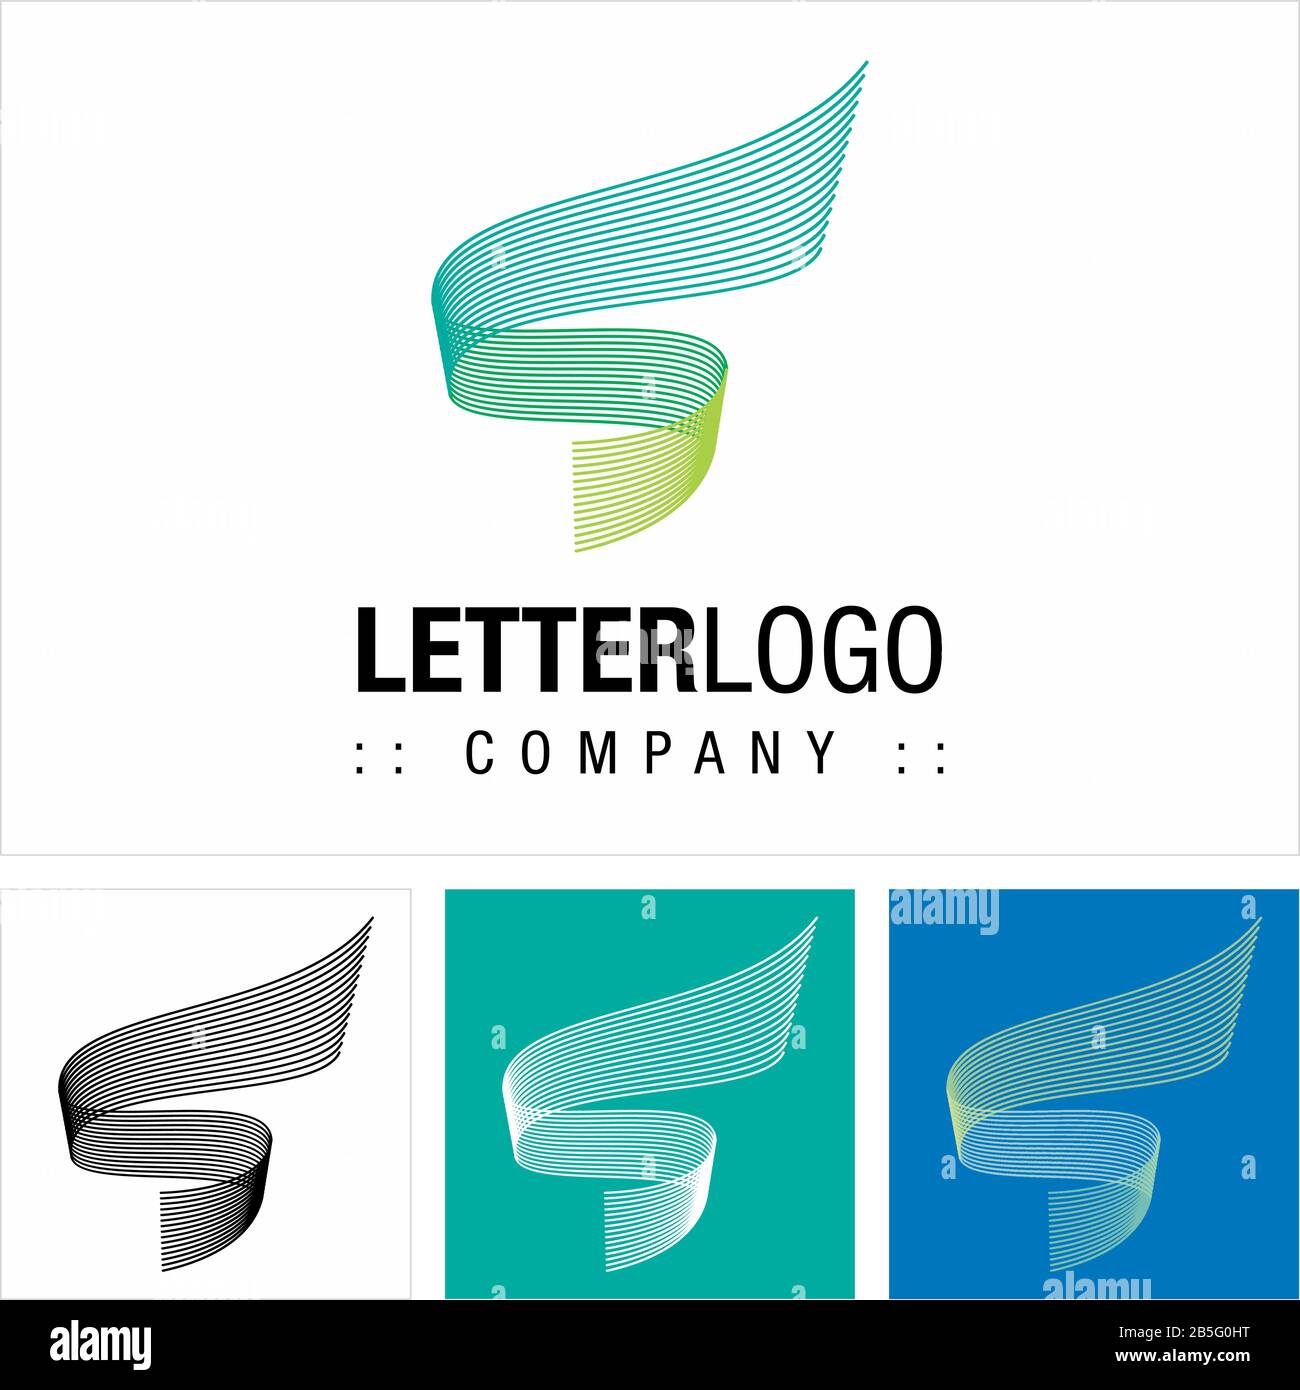 Logo (Logotipo) Di Vector Symbol Company (Agenzia Di Viaggio) Spiral (Lettera S). Linee Multiple, Movimento, Dinamico, Astratto, Icona Di Stile Minimalista Illustrazione Vettoriale